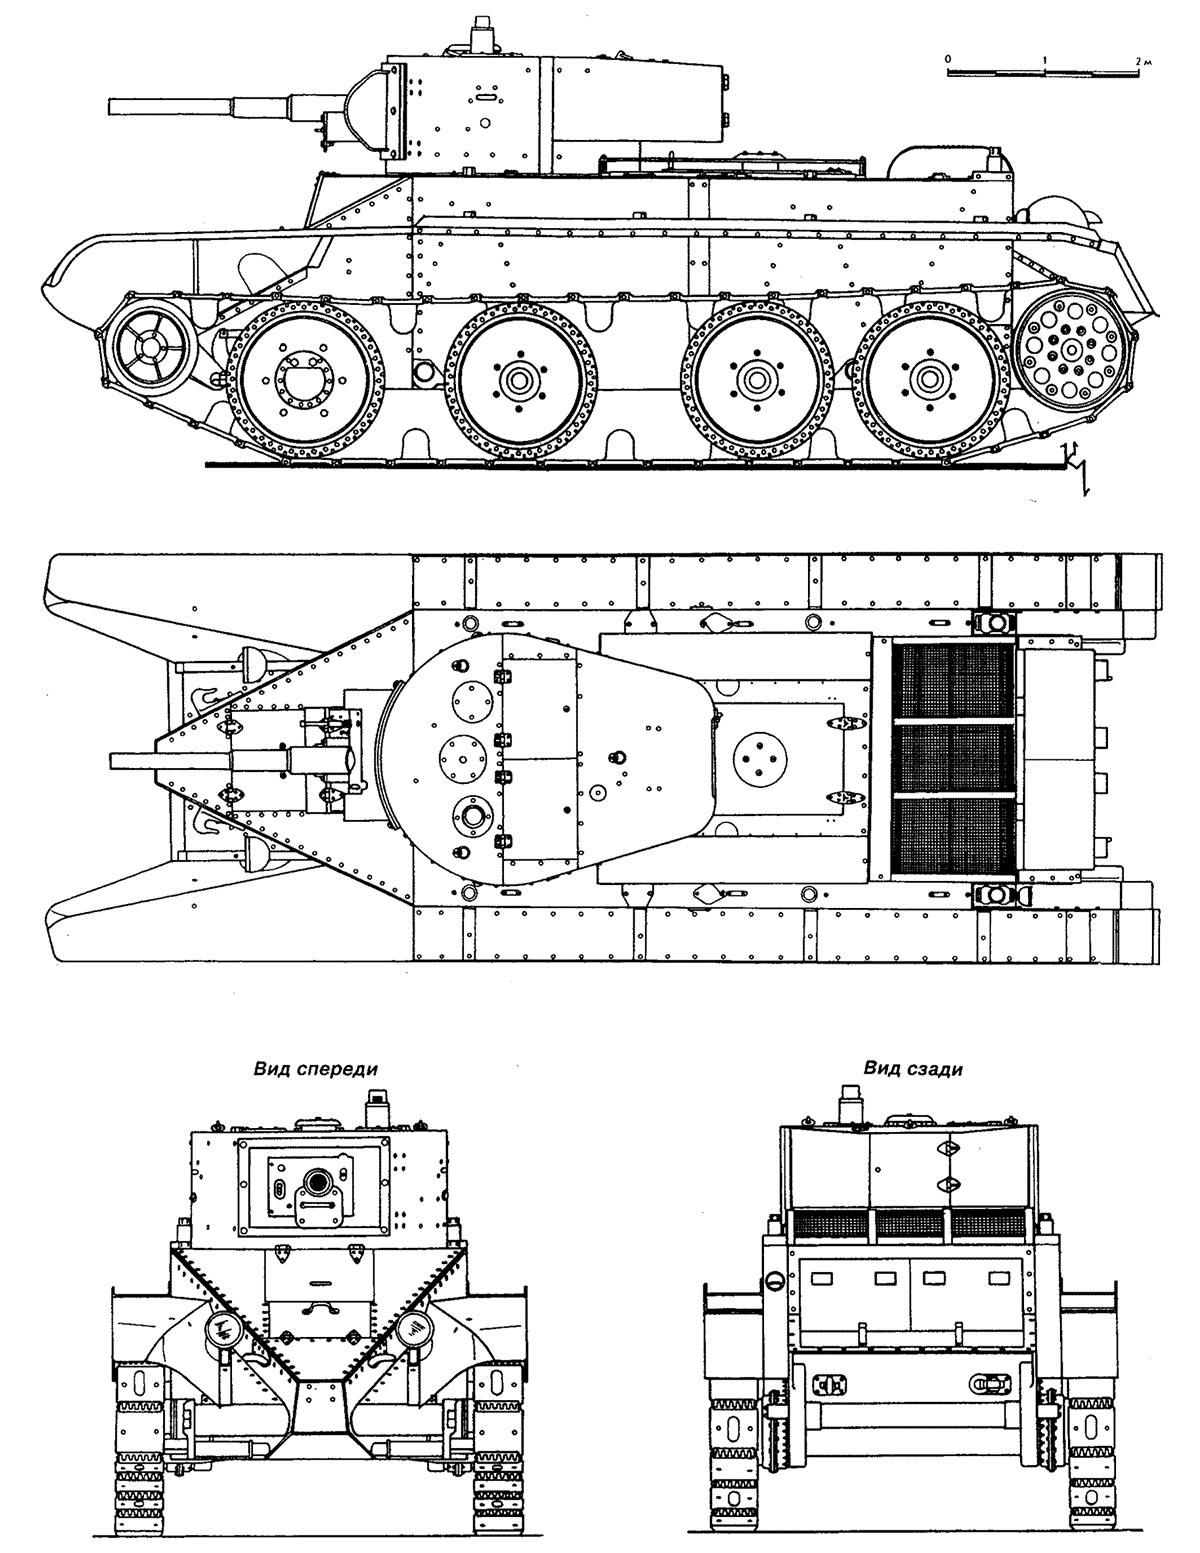 Чертеж легкого танка БТ-5